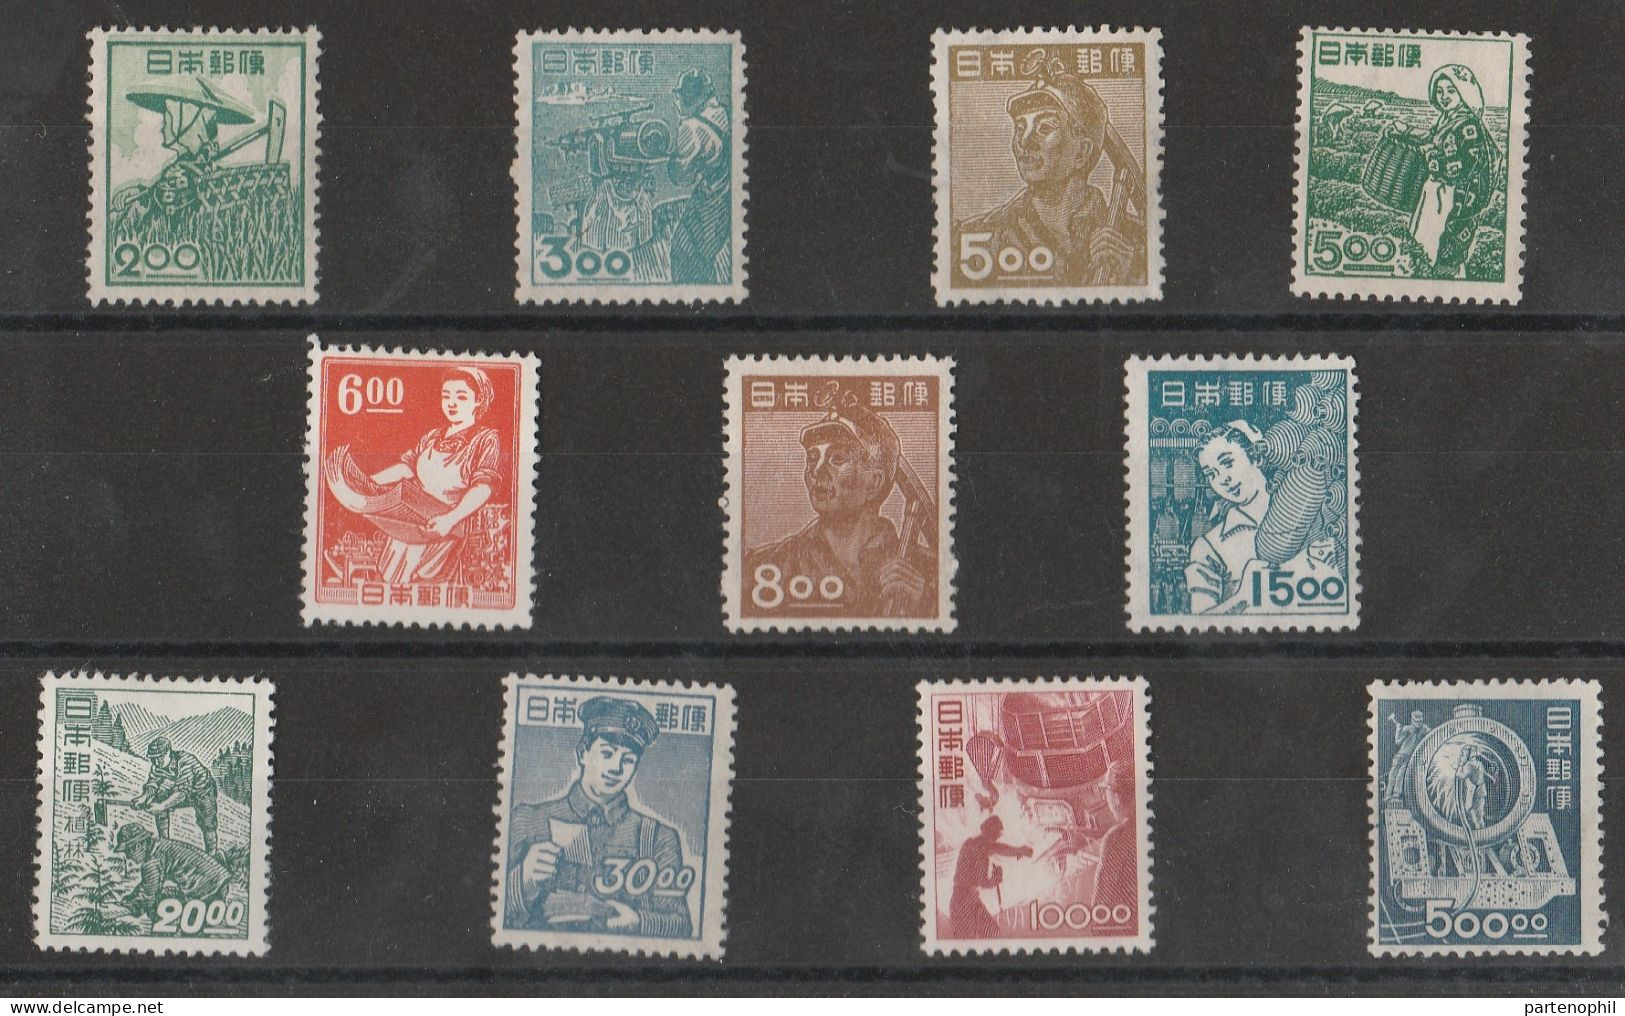 Japan 650 Giappone 1948-49 - Definitiva, La Serie 11 Valori N. 392/402. Cat. € 1500,00. SPL MH - Unused Stamps